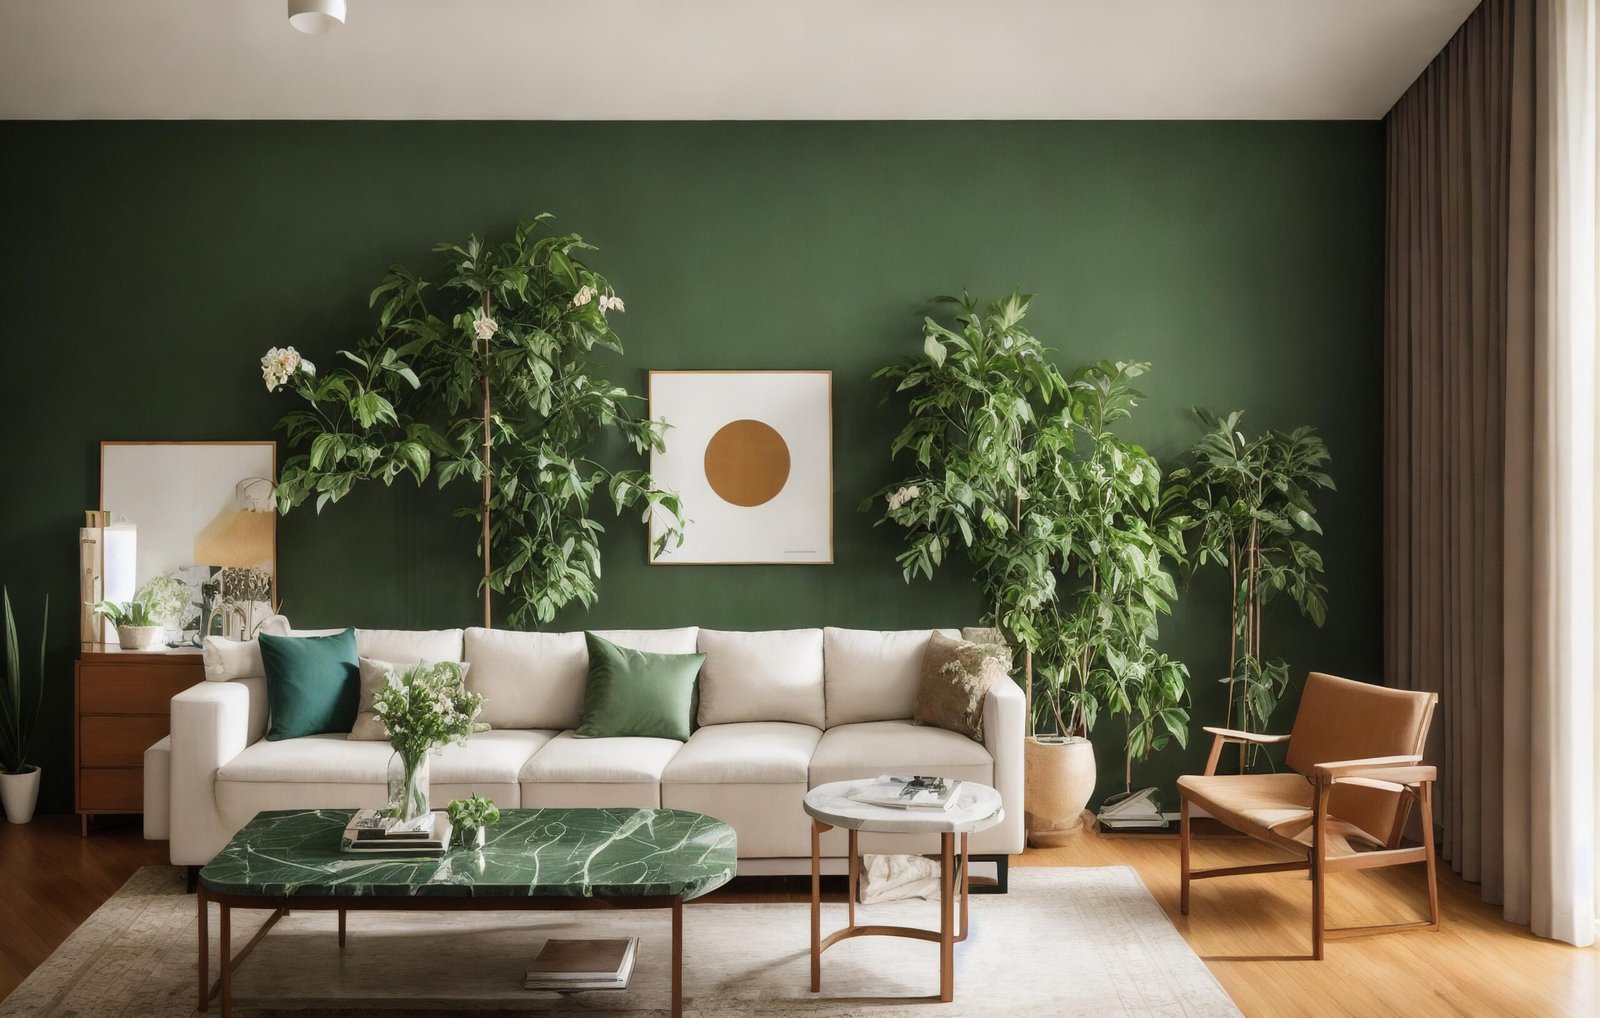 Salon moderne avec un canapé crème, des plantes vertes et un mur vert, démontrant l'expertise en design intérieur de Hexuvium.